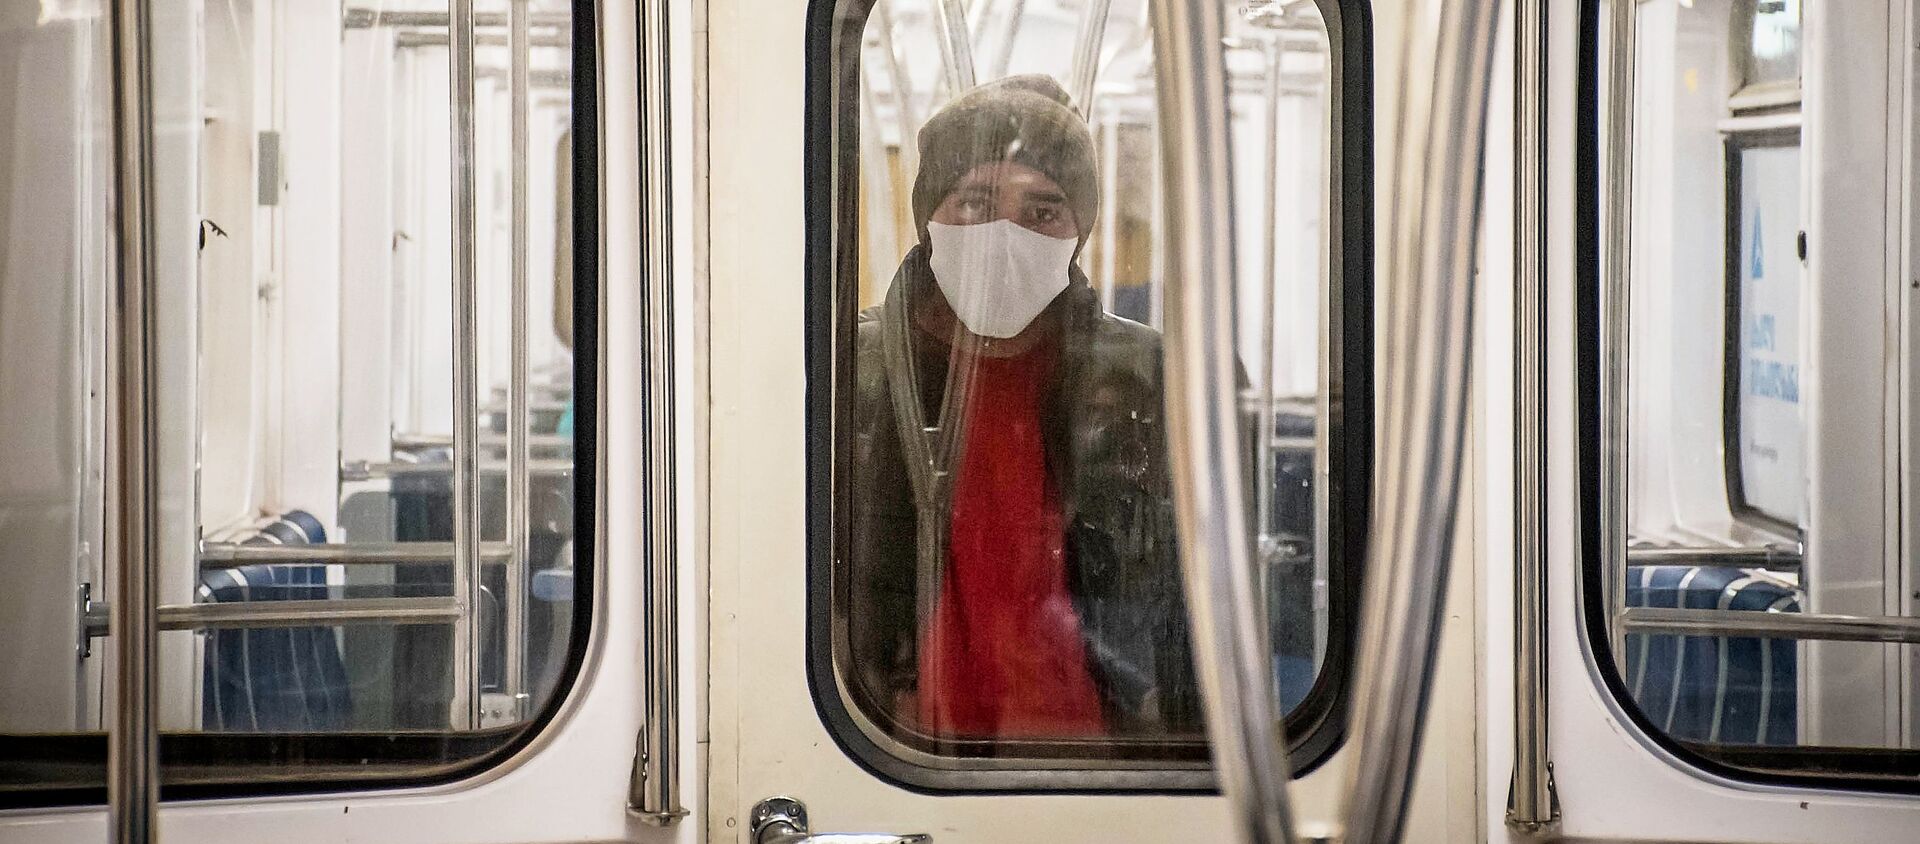 Мужчина в защитной маске в вагоне метро в Тбилиси - Sputnik Грузия, 1920, 03.03.2021